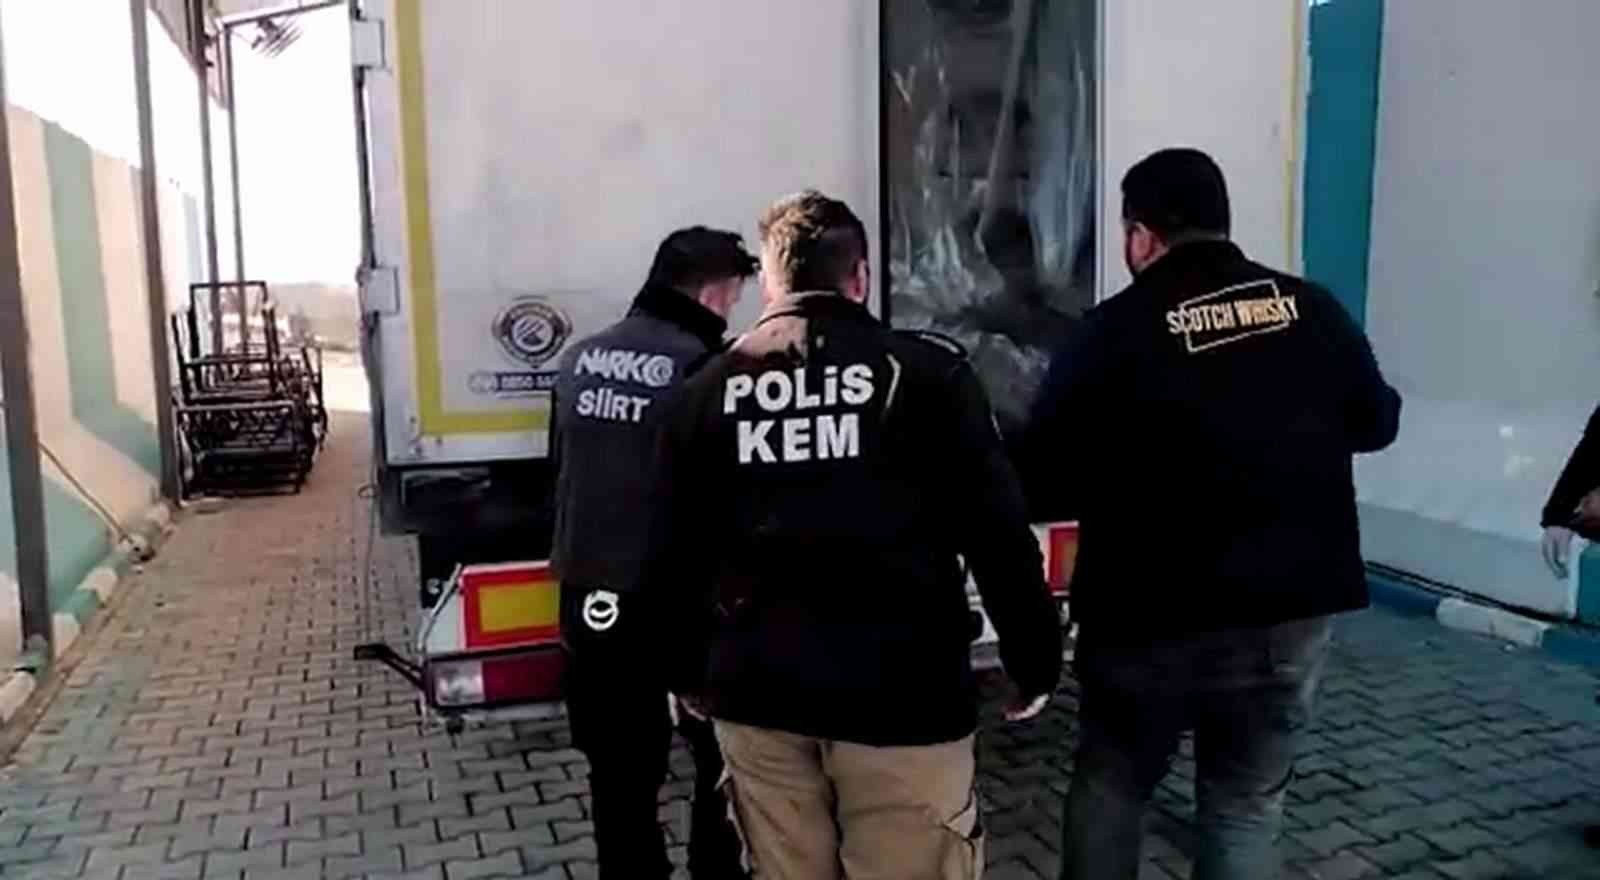 Siirt’te 21 kilo 260 gram eroin ele geçirildi: 2 kişi tutuklandı